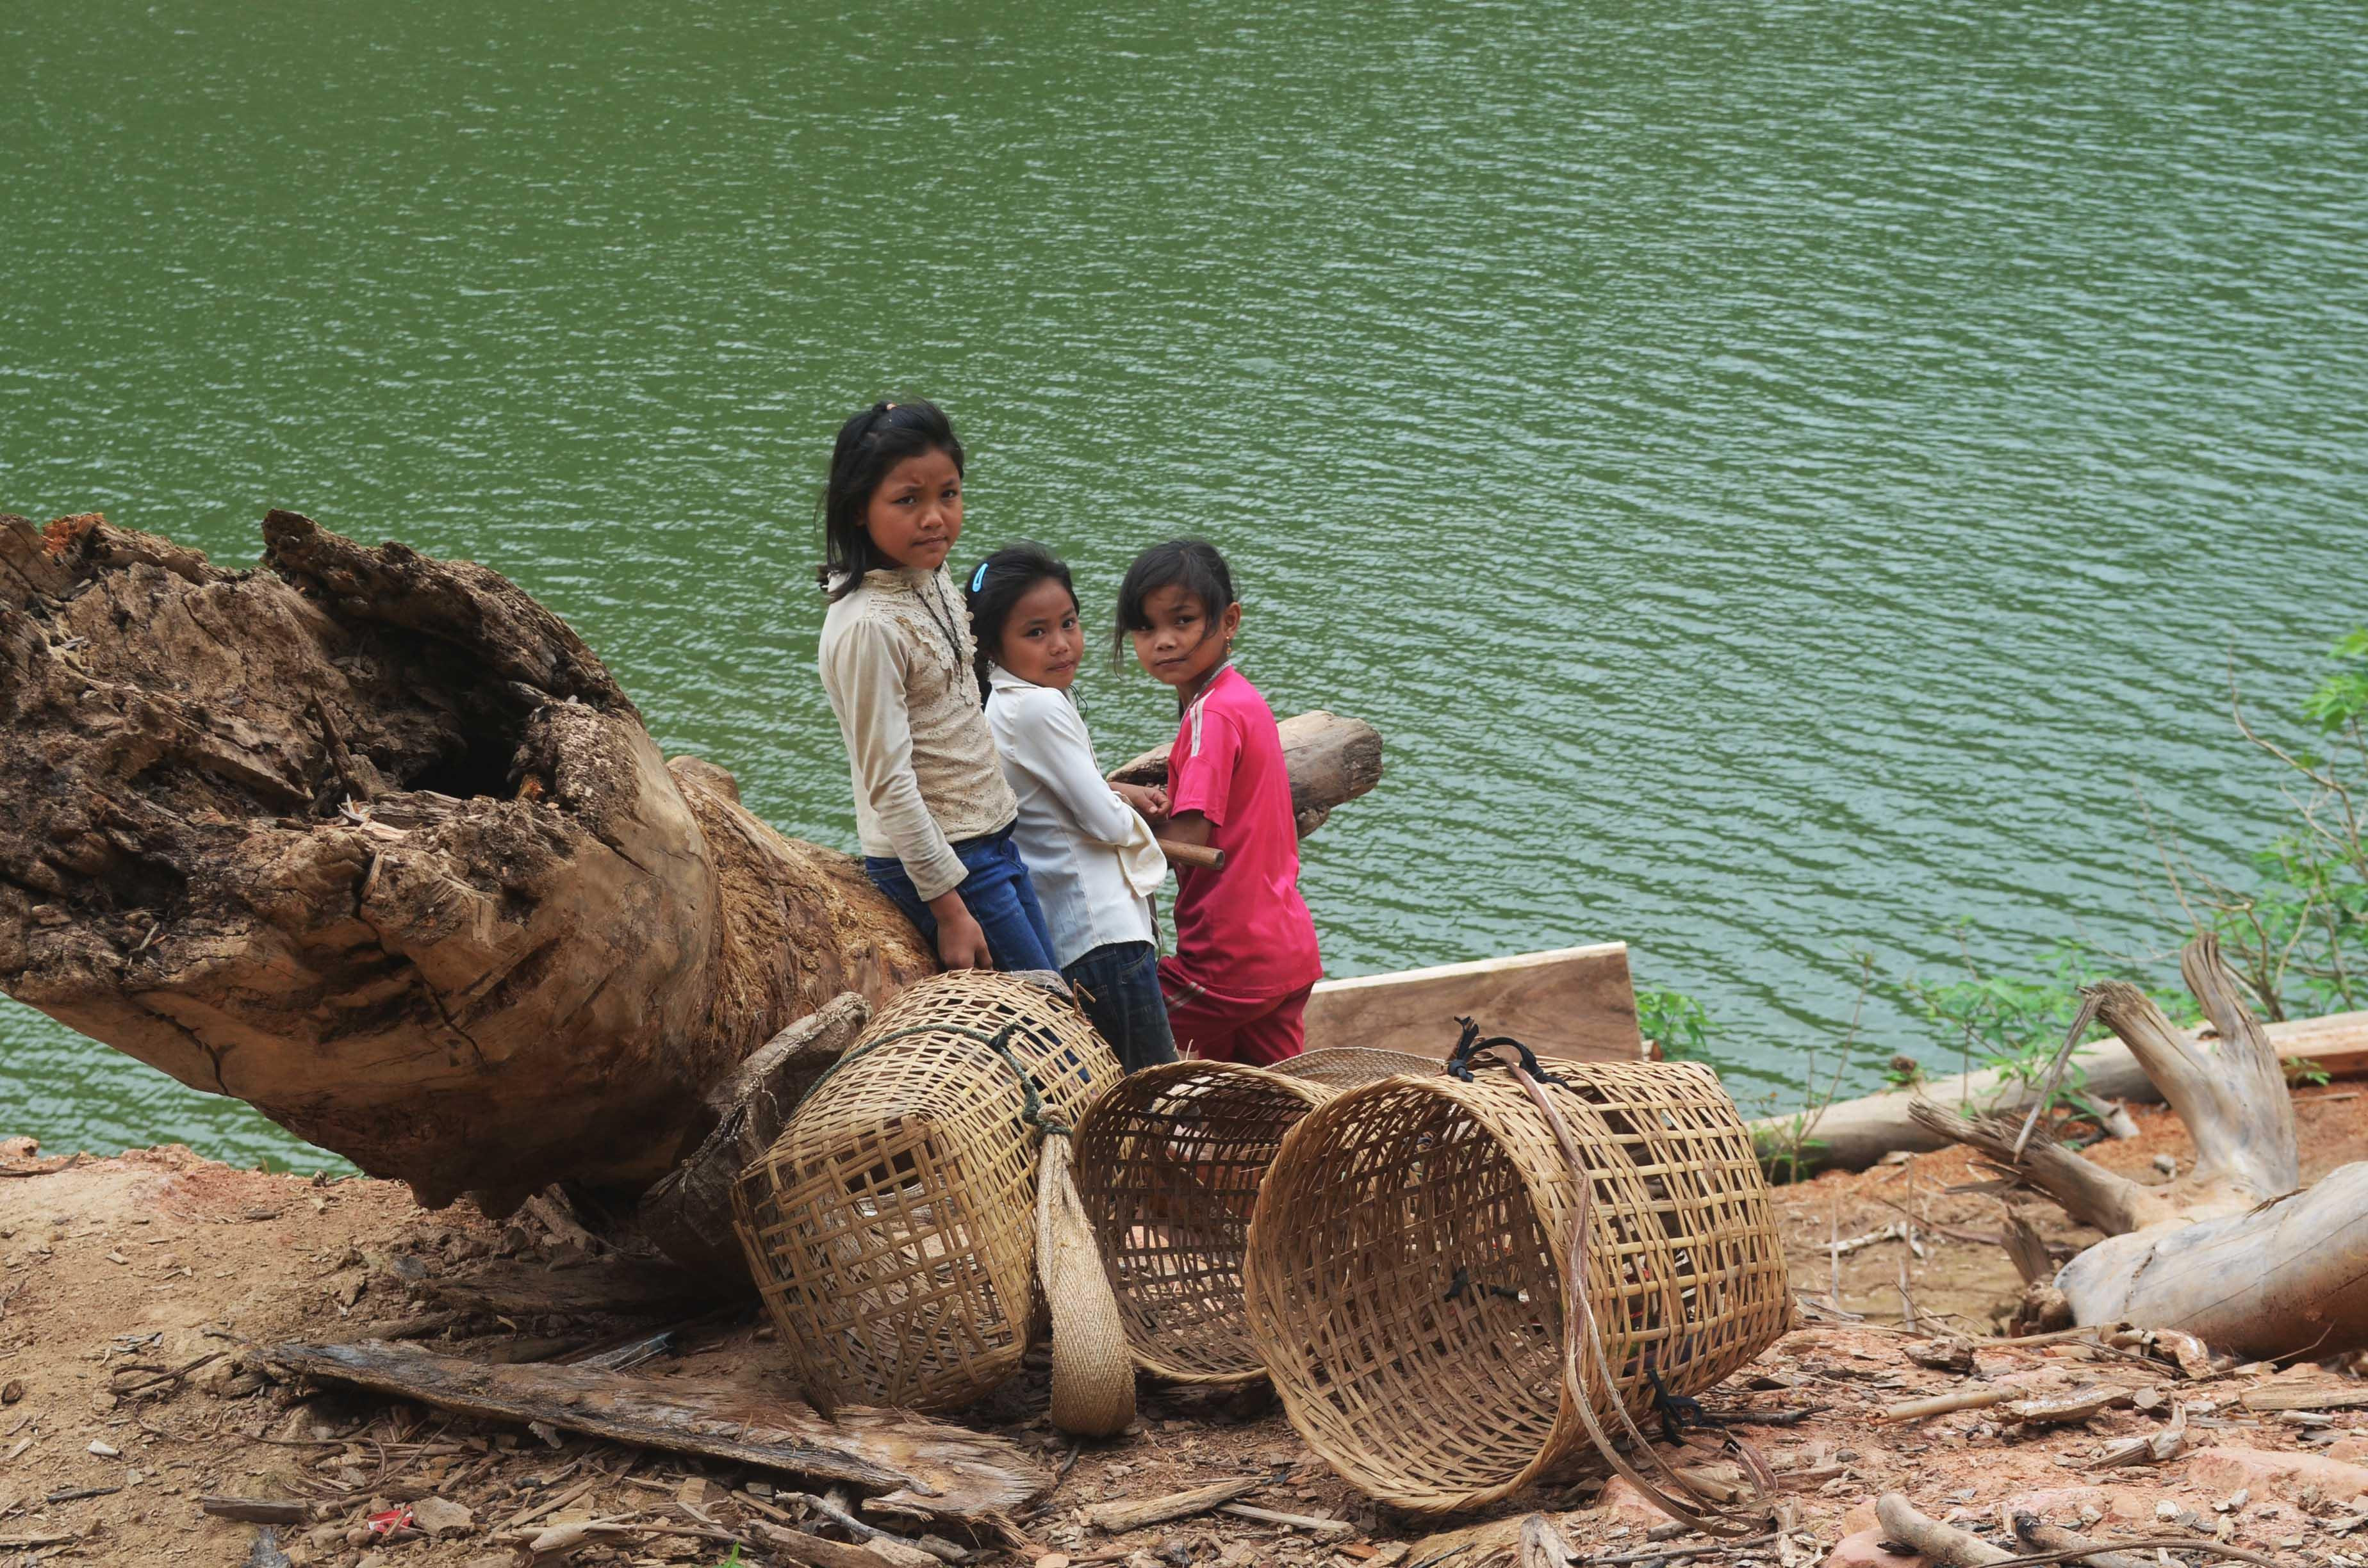 Còn đây là những đứa bé ở vùng lòng hồ đang chờ thuyền để sang bên kia sông hái lượm rau quả. Ảnh: Nhật Lân